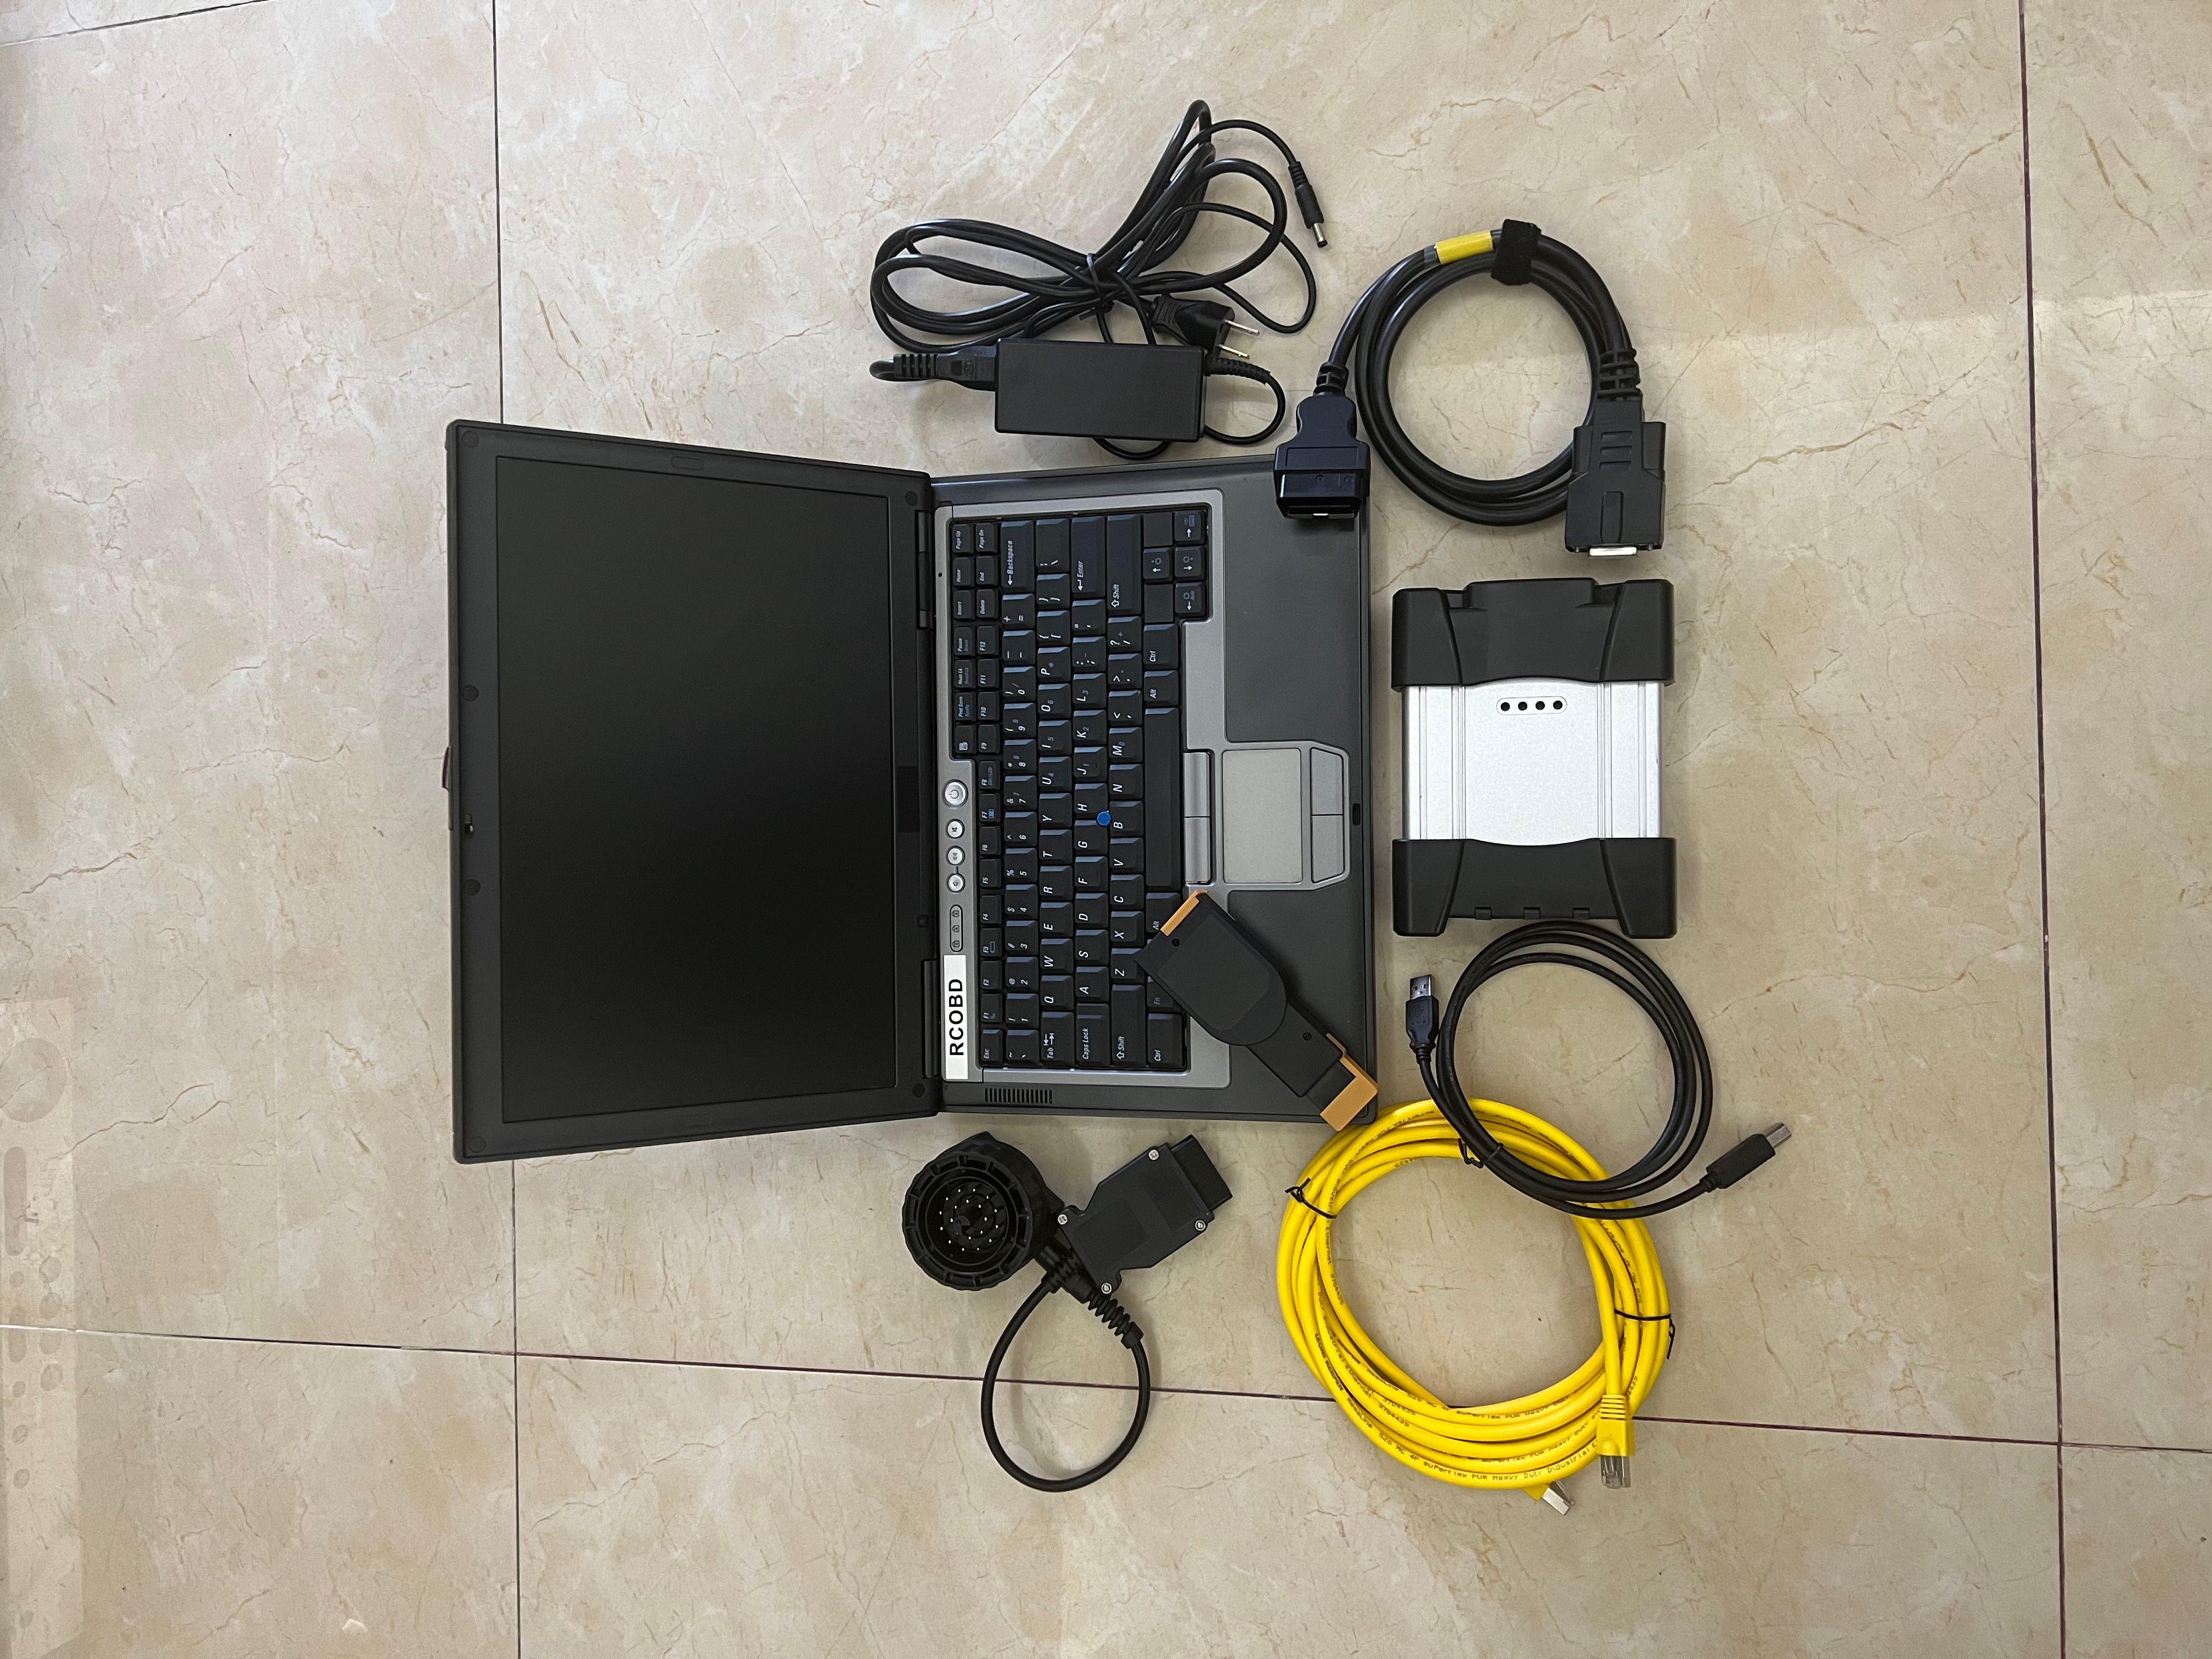 Voor BMW ICOM Volgende Auto Diagnose Tools met D630 4G gebruikte laptop 1 TB HDD SSD v01.2023 Software klaar voor gebruik